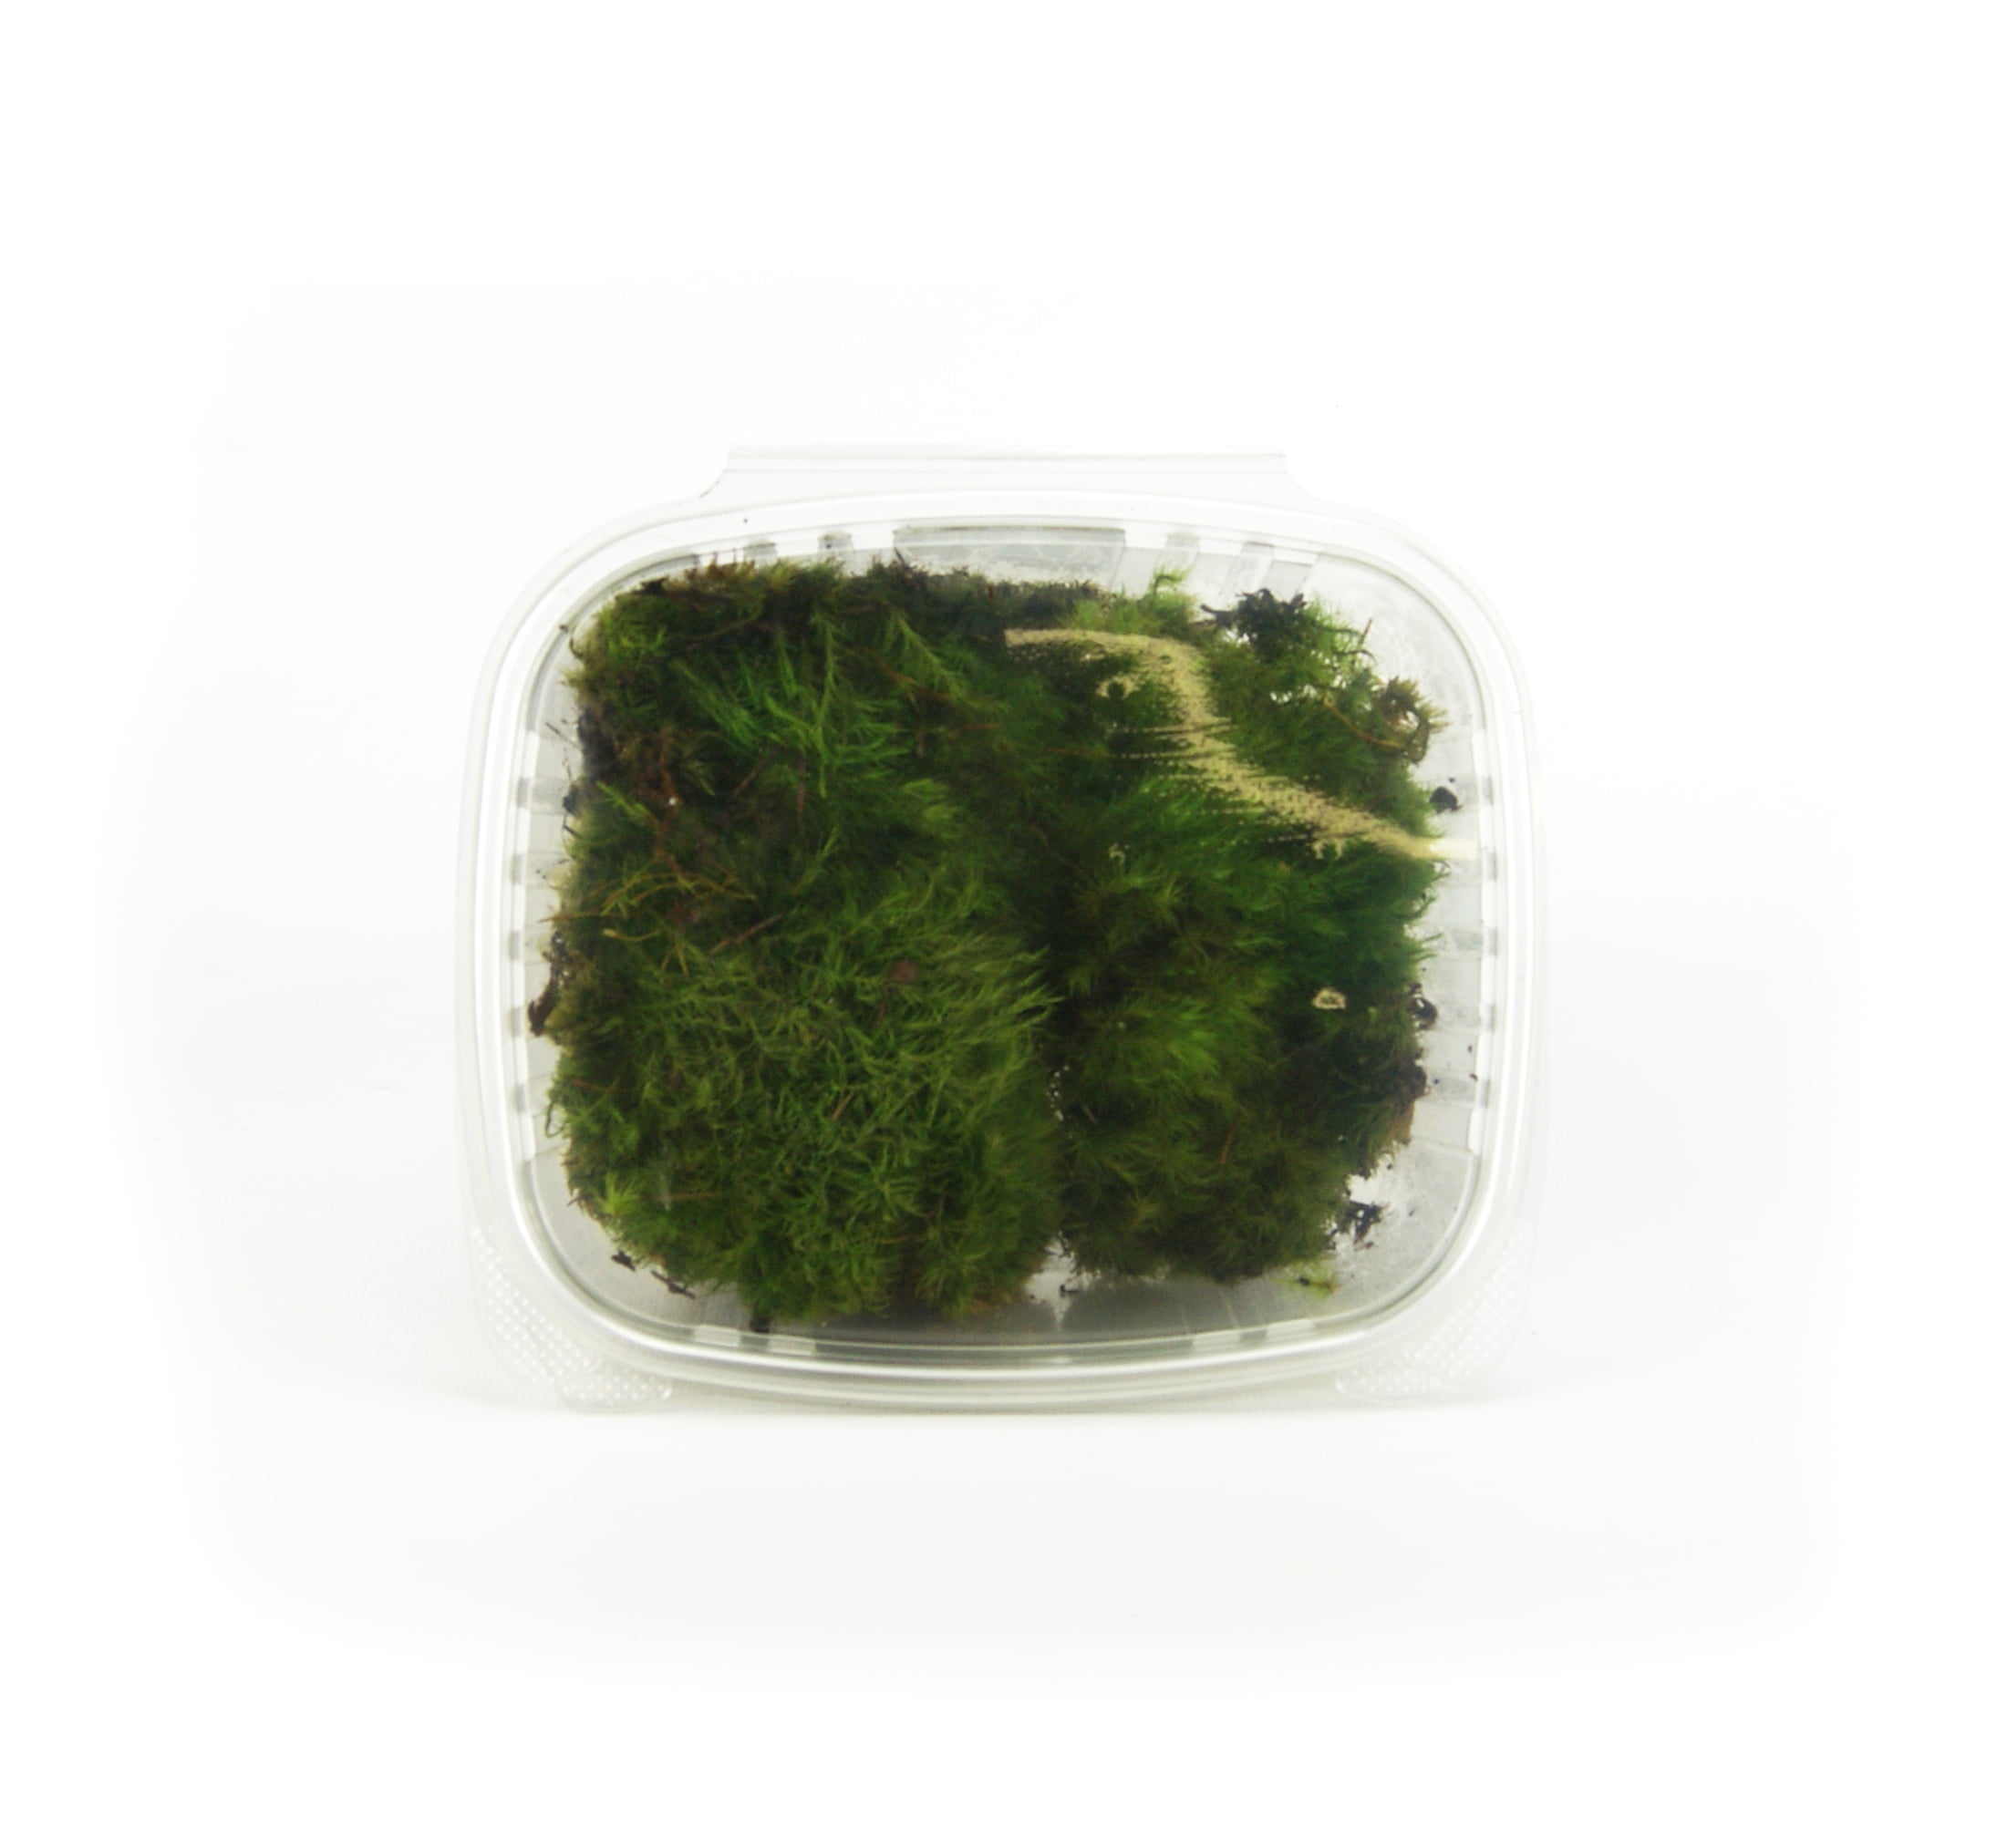 Live Frog Moss Mood Moss Pads Dicranum for Terrarium or Vivarium Quart Bag  -  Denmark